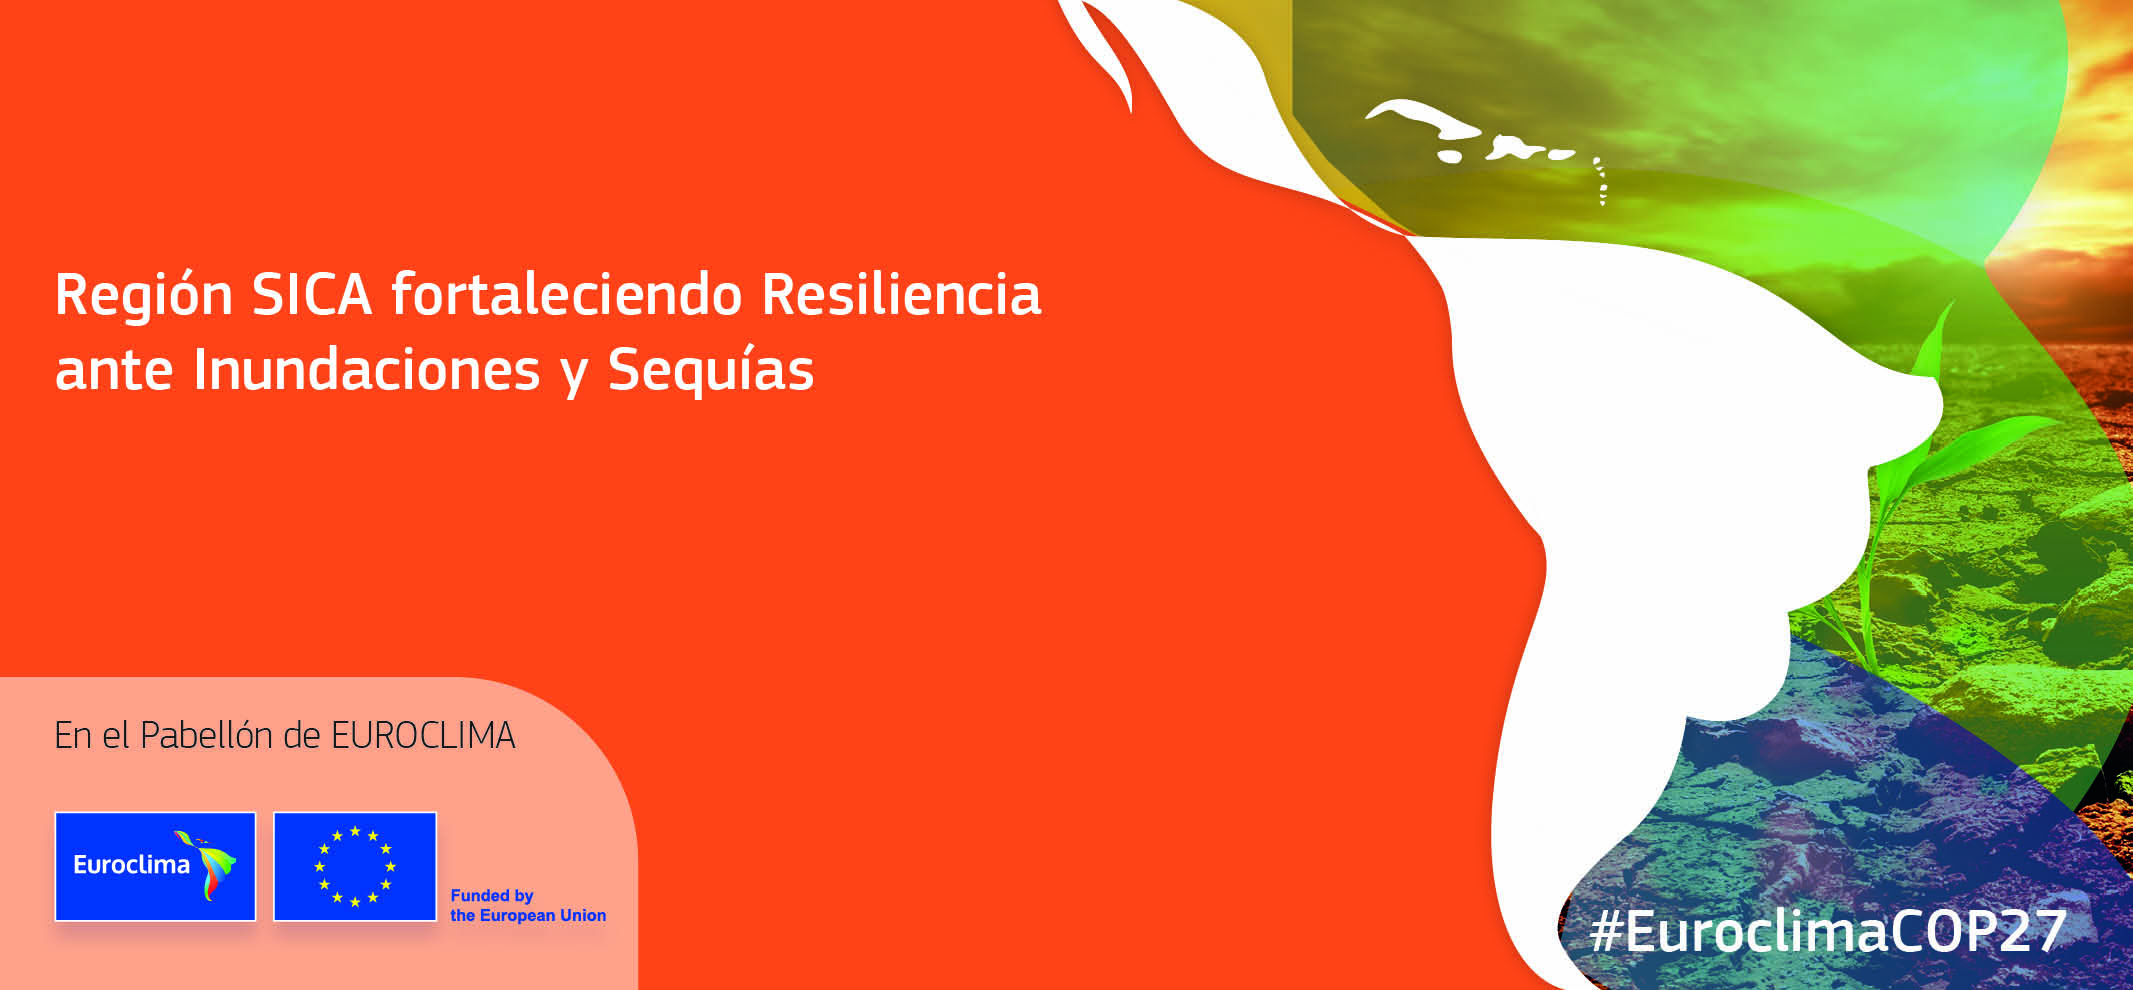 Region SICA fortaleciendo Resiliencia ante Inundaciones y Sequias